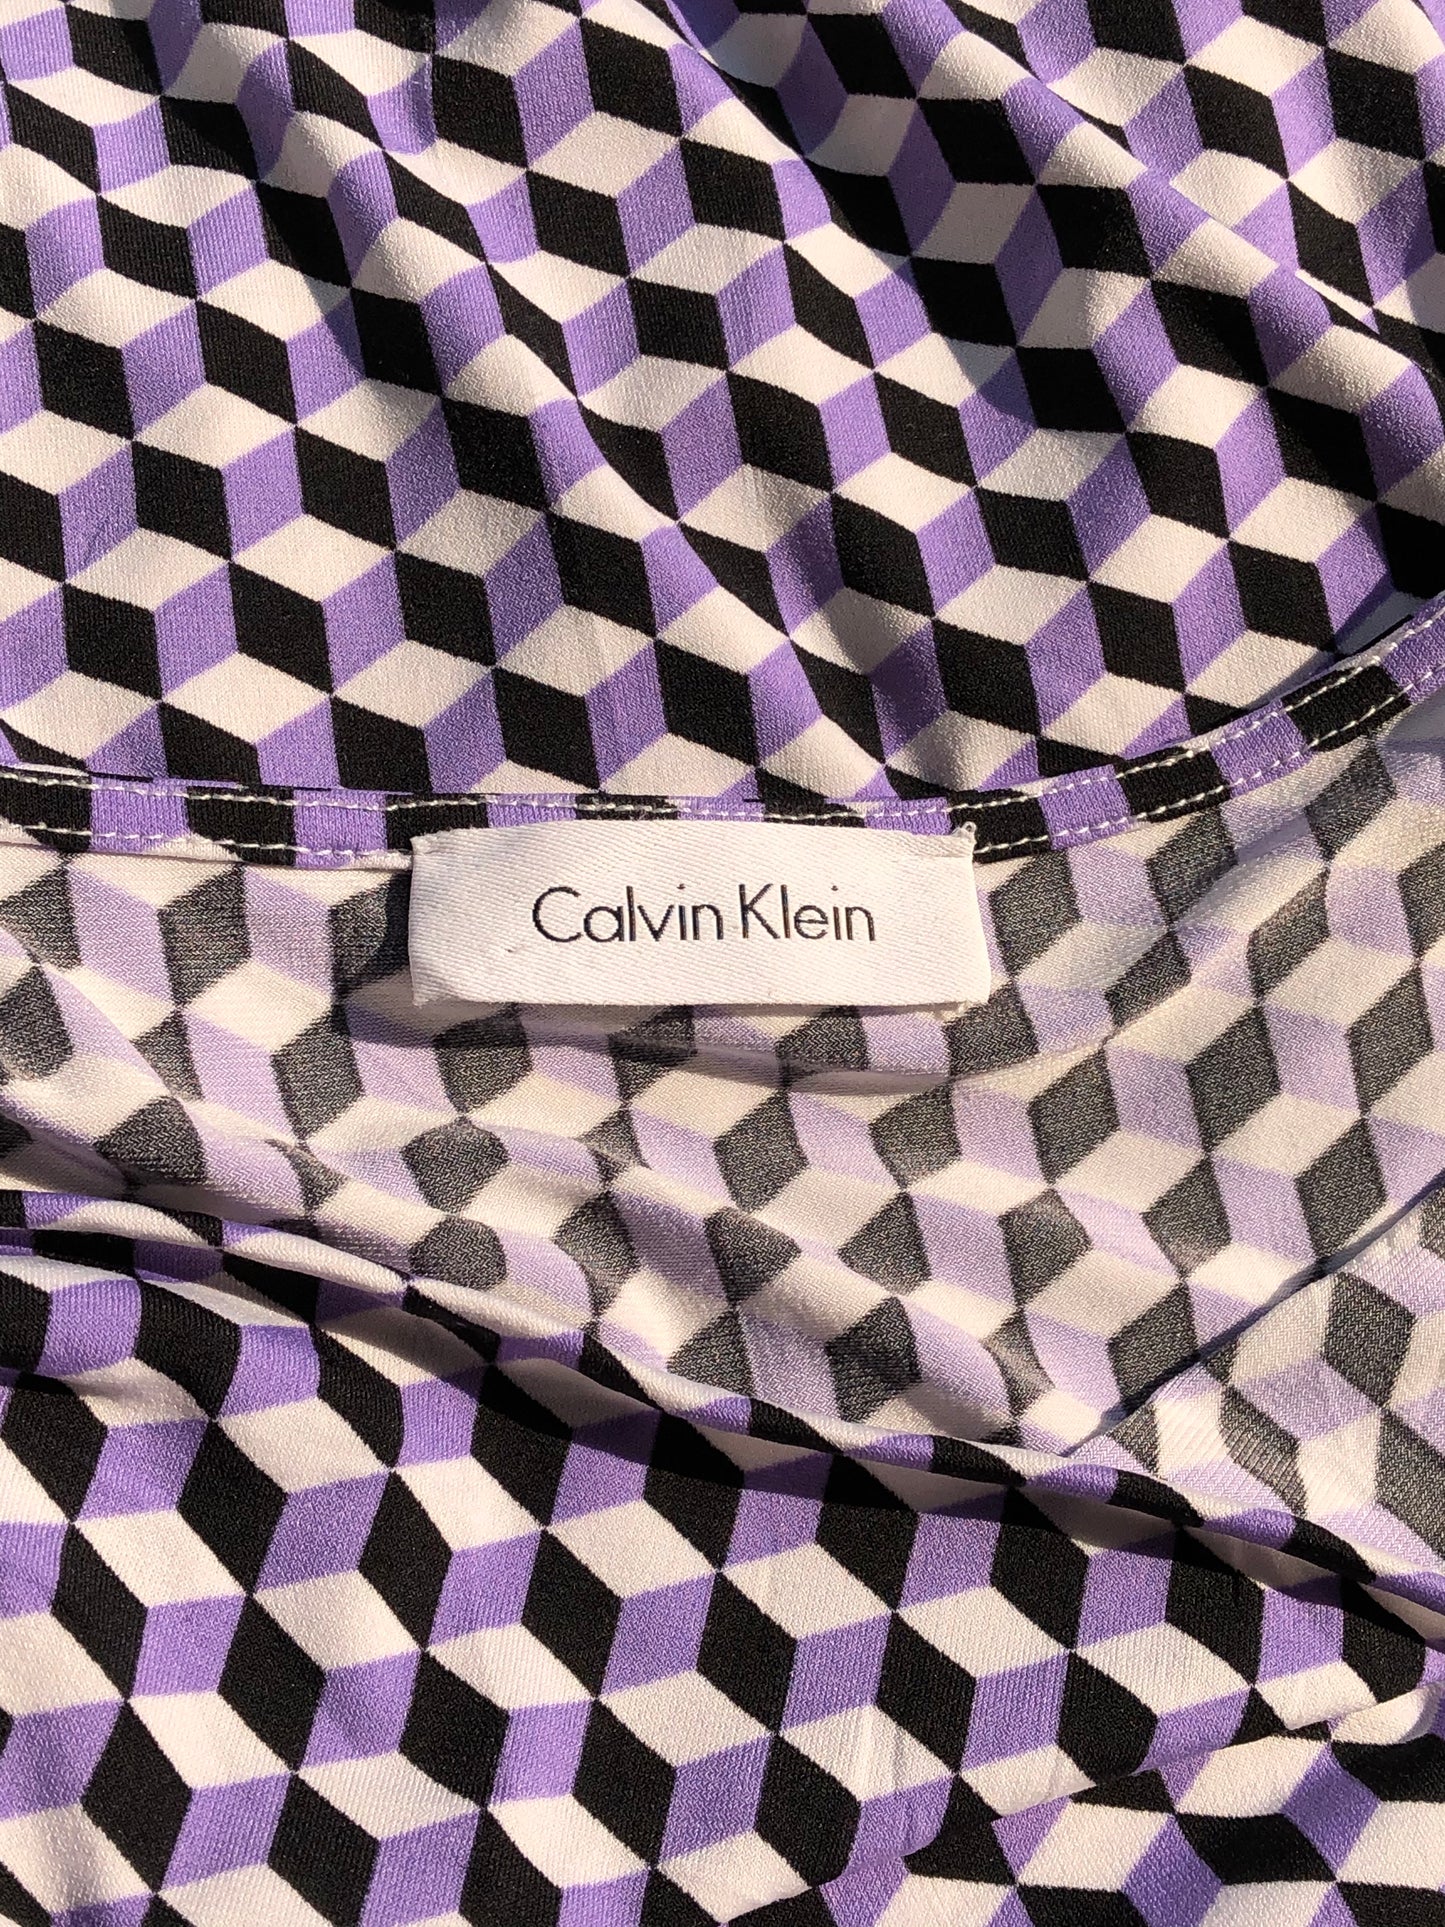 Calvin Klein top